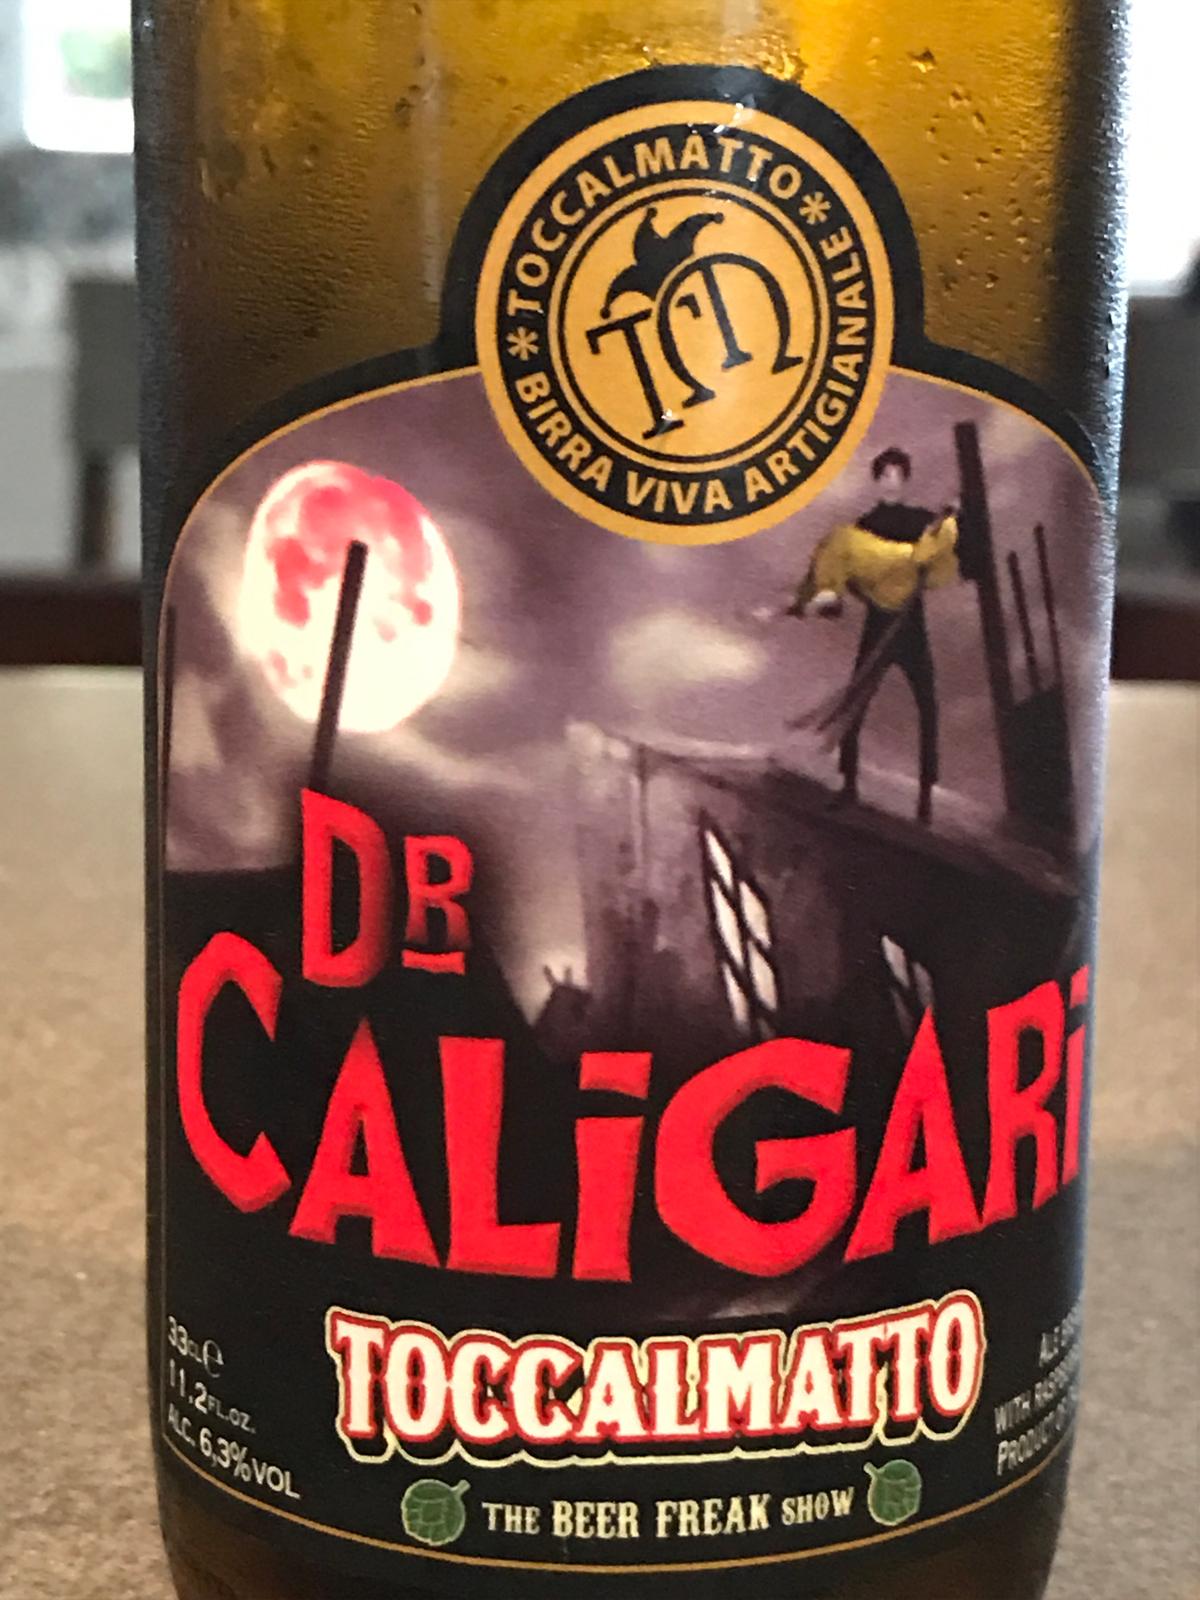 Dr Caligari